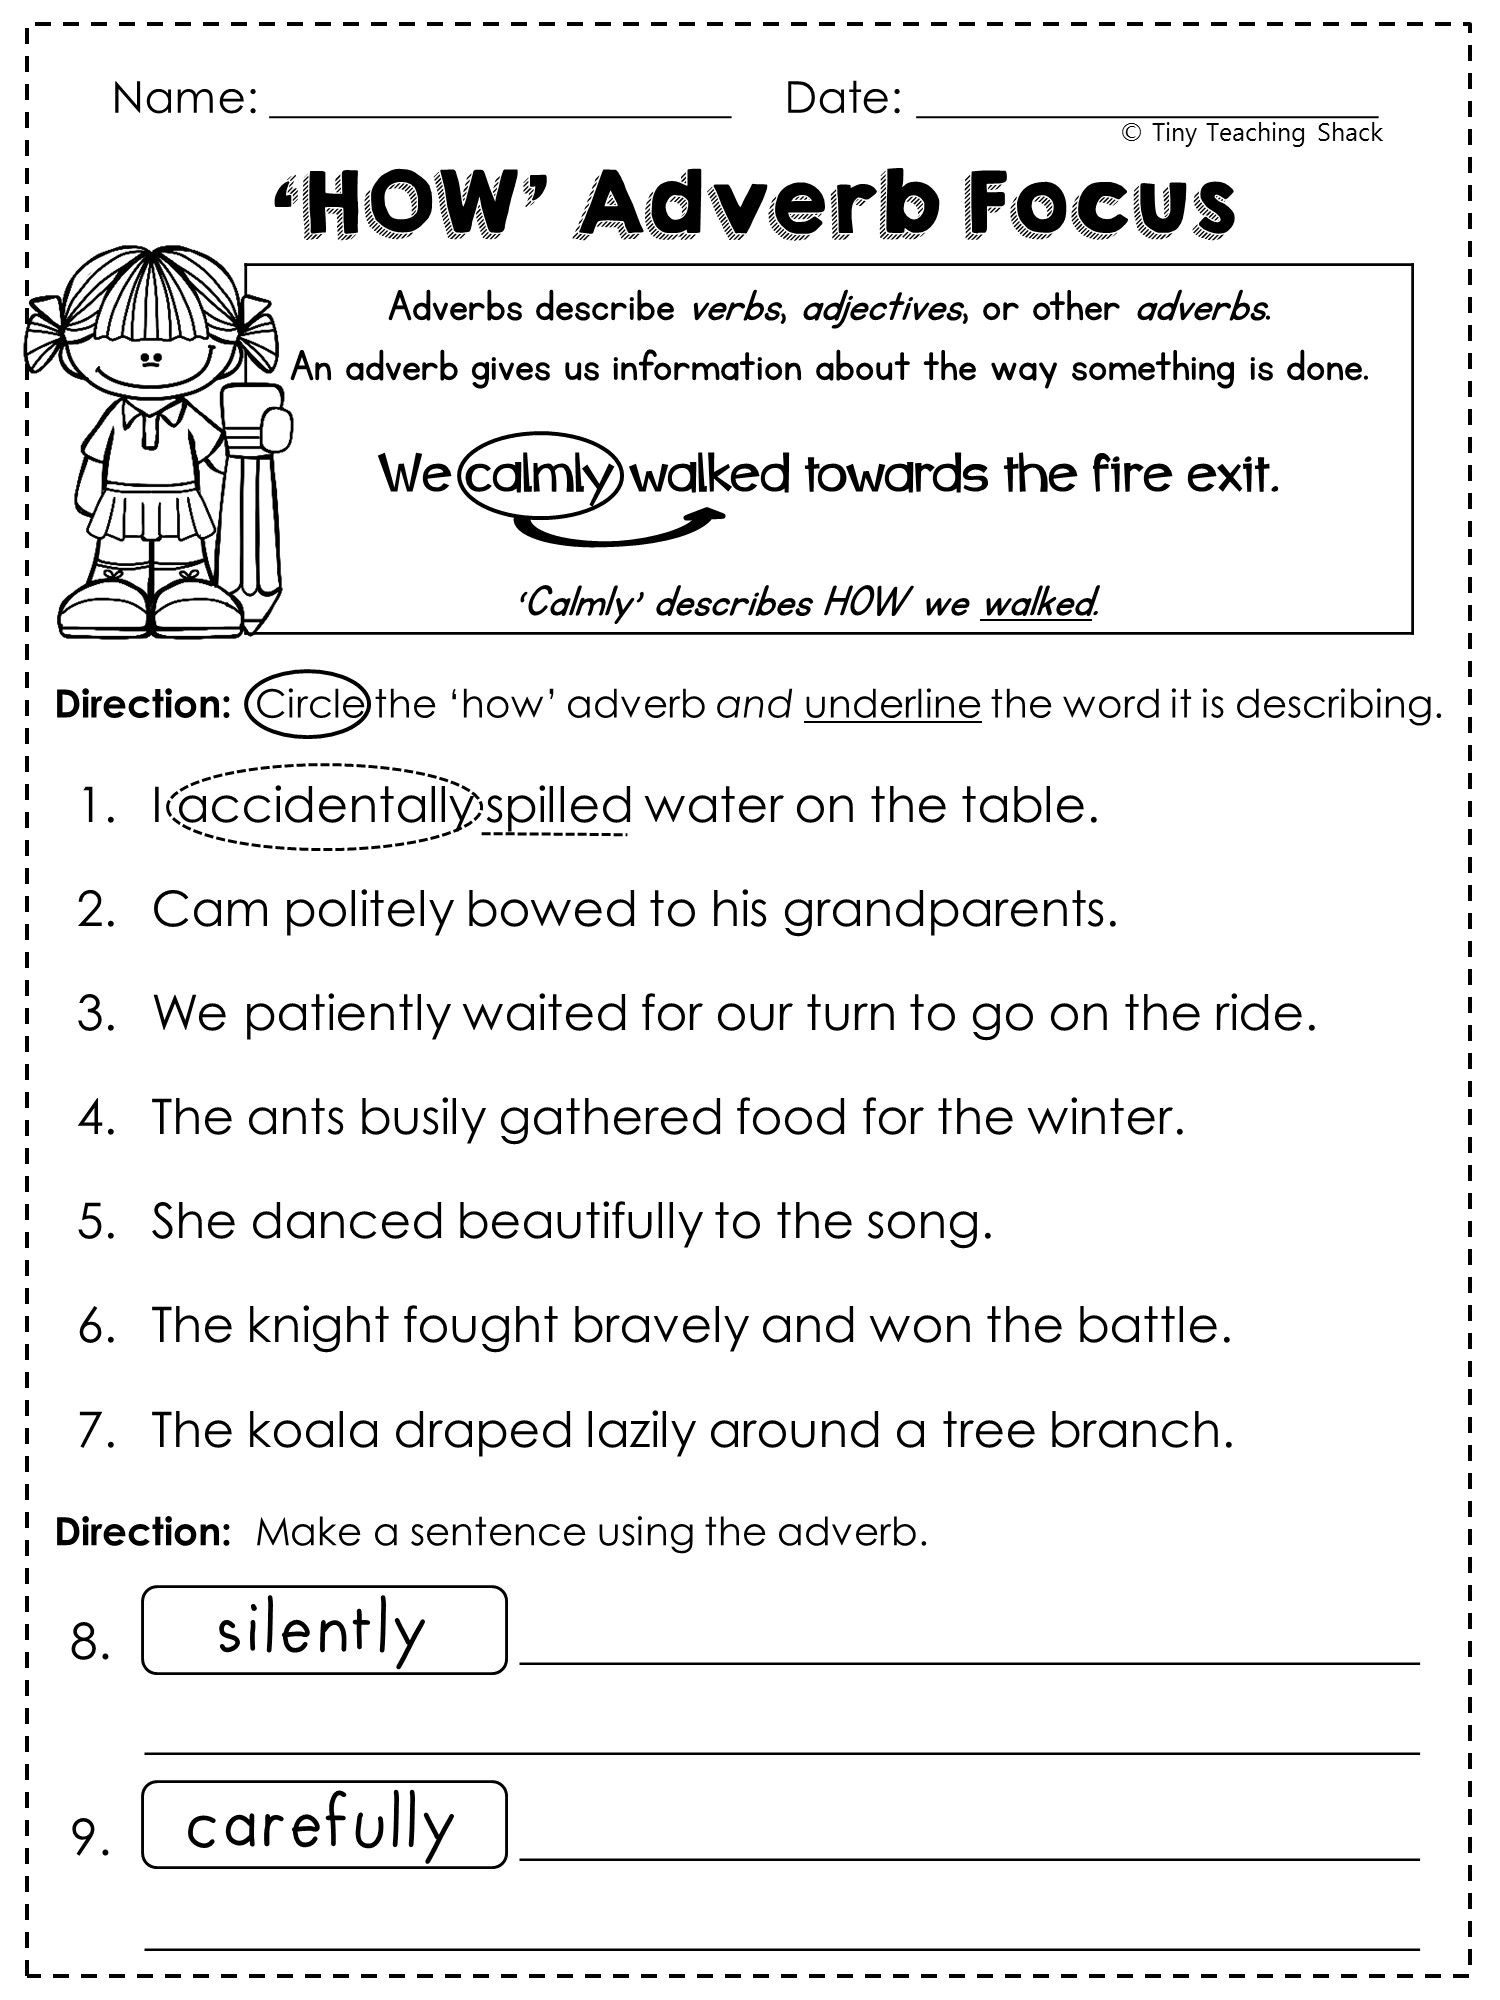 Free Adverb Worksheet 2nd Grade Worksheets Adverbs Worksheet